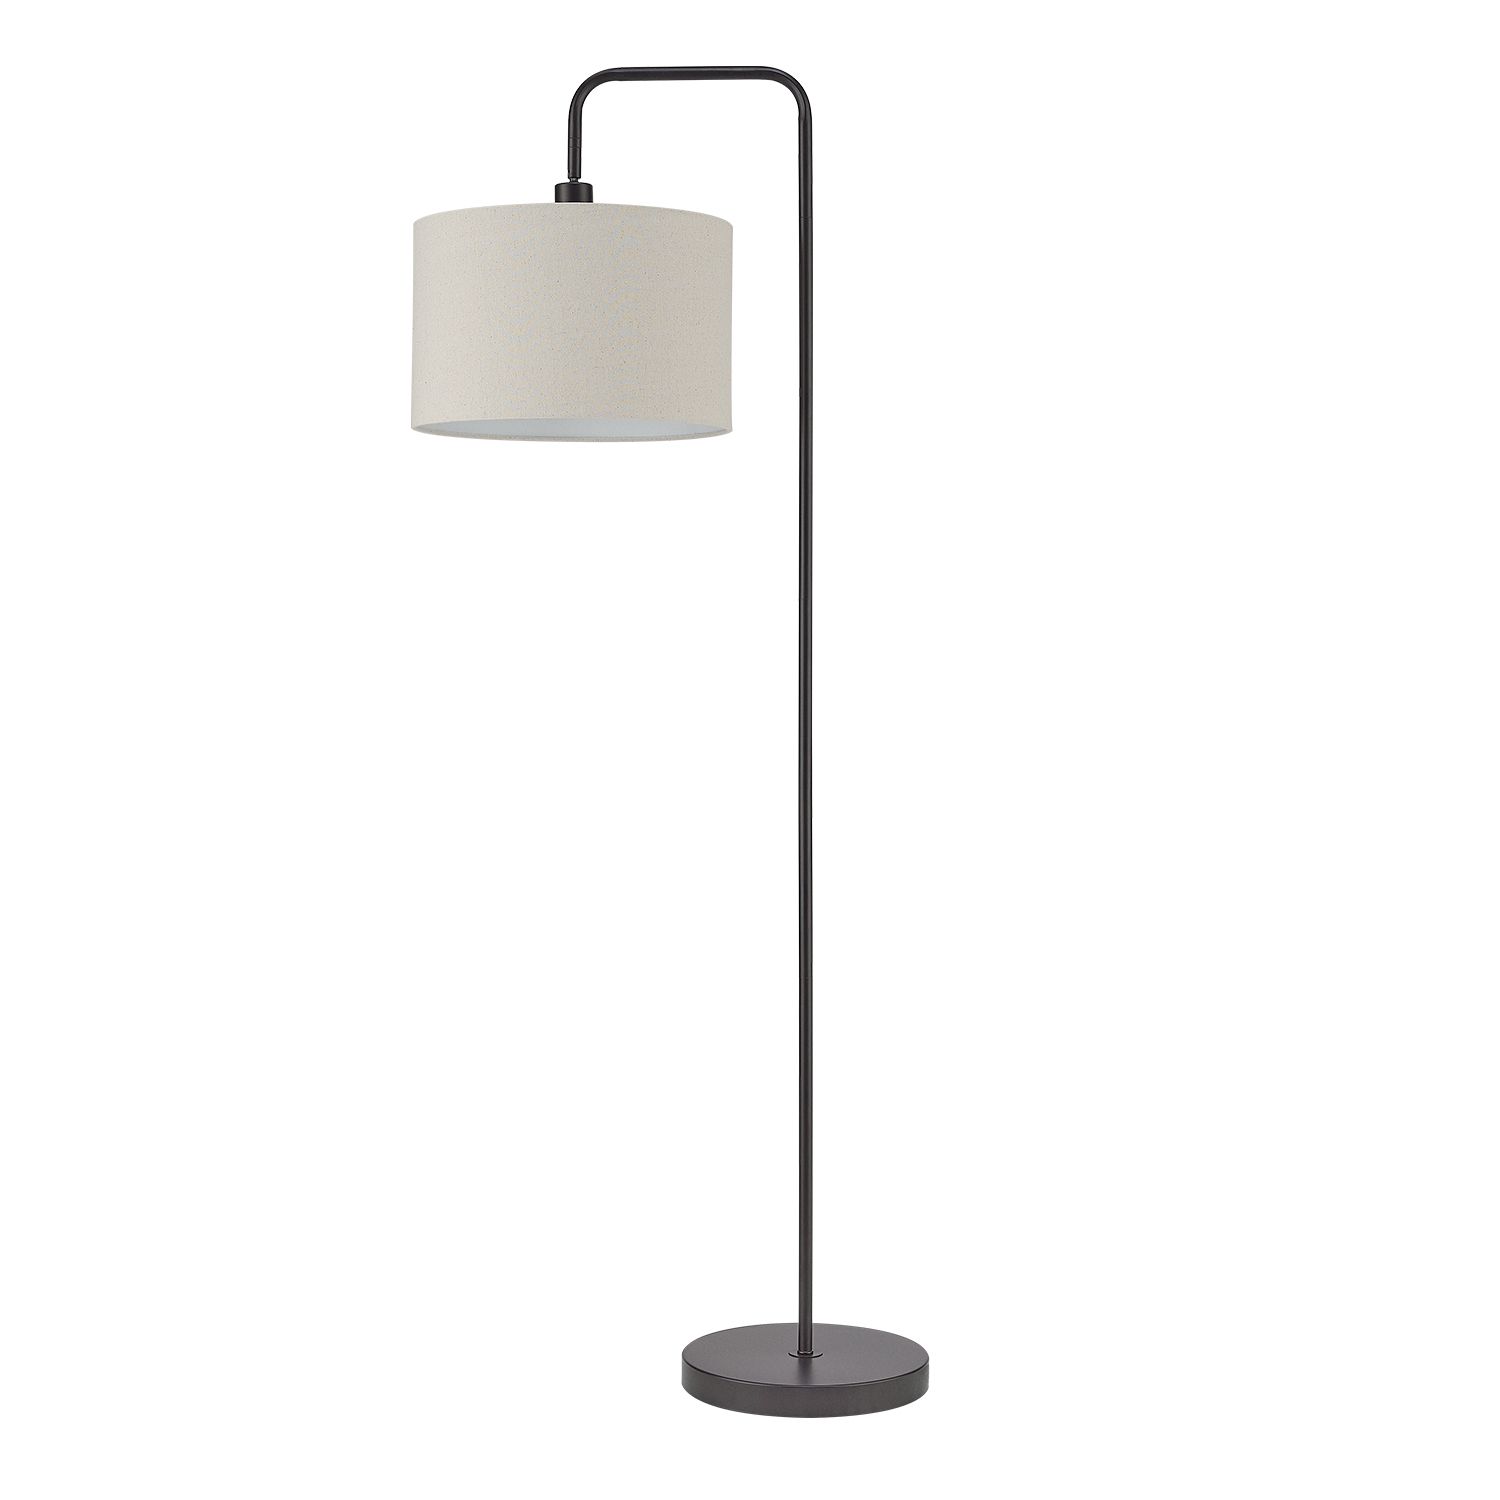 Globe Electric Barden 58" Dark Bronze Floor Lamp With Beige Fabric Shade,  67395 – Walmart With Dark Bronze Floor Lamps (View 5 of 15)